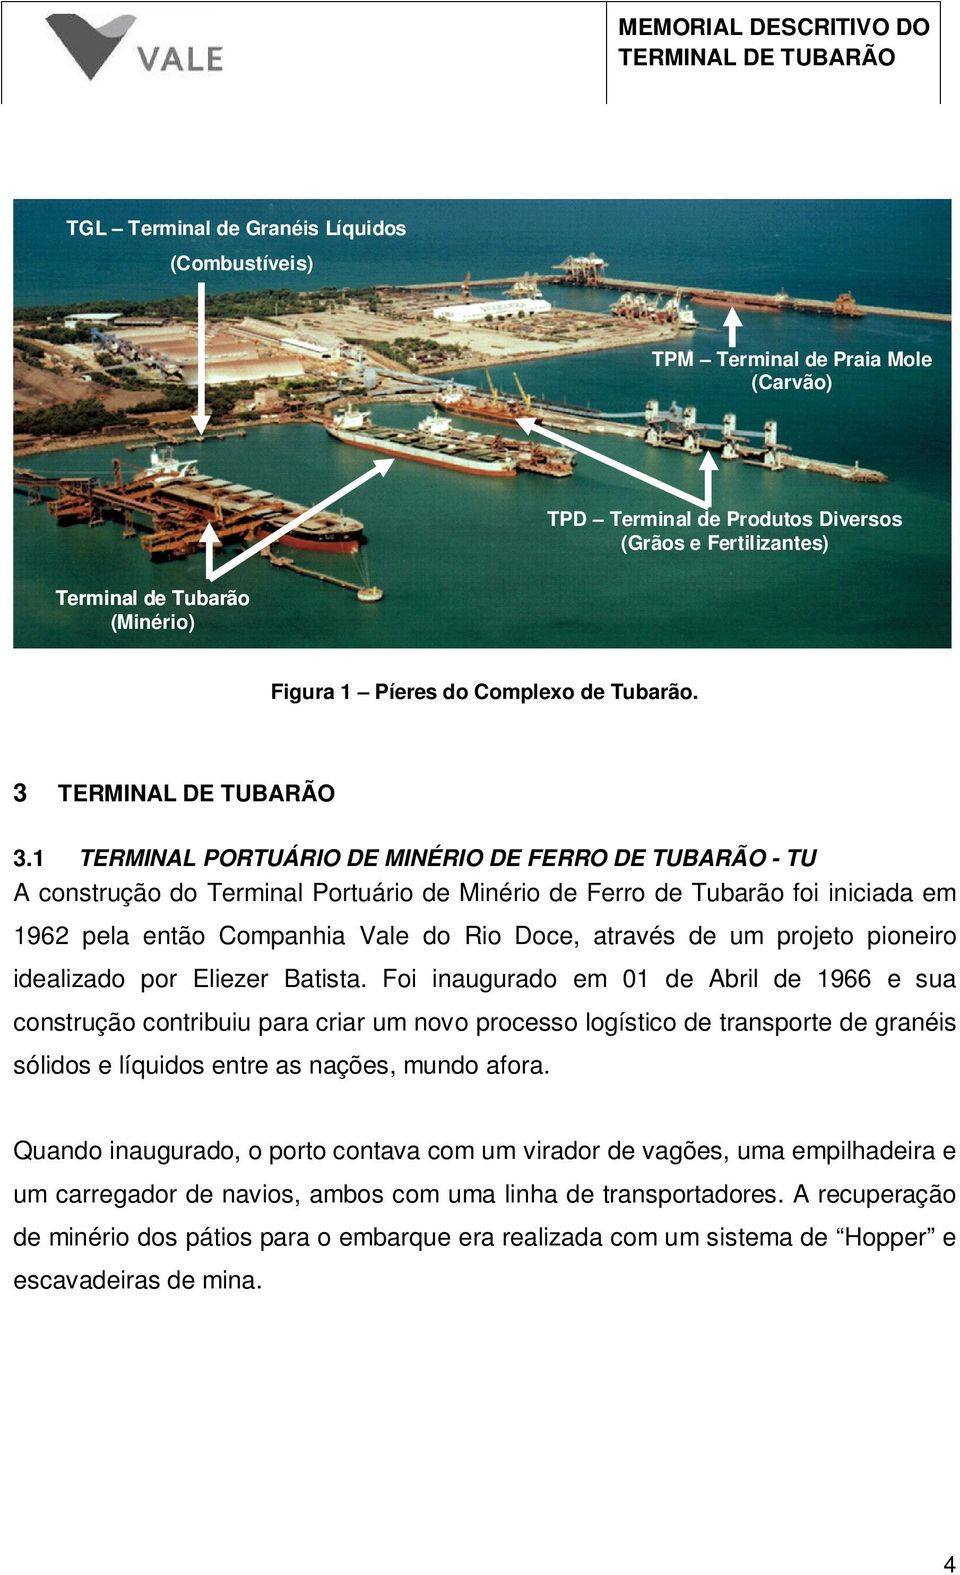 1 TERMINAL PORTUÁRIO DE MINÉRIO DE FERRO DE TUBARÃO - TU A construção do Terminal Portuário de Minério de Ferro de Tubarão foi iniciada em 1962 pela então Companhia Vale do Rio Doce, através de um